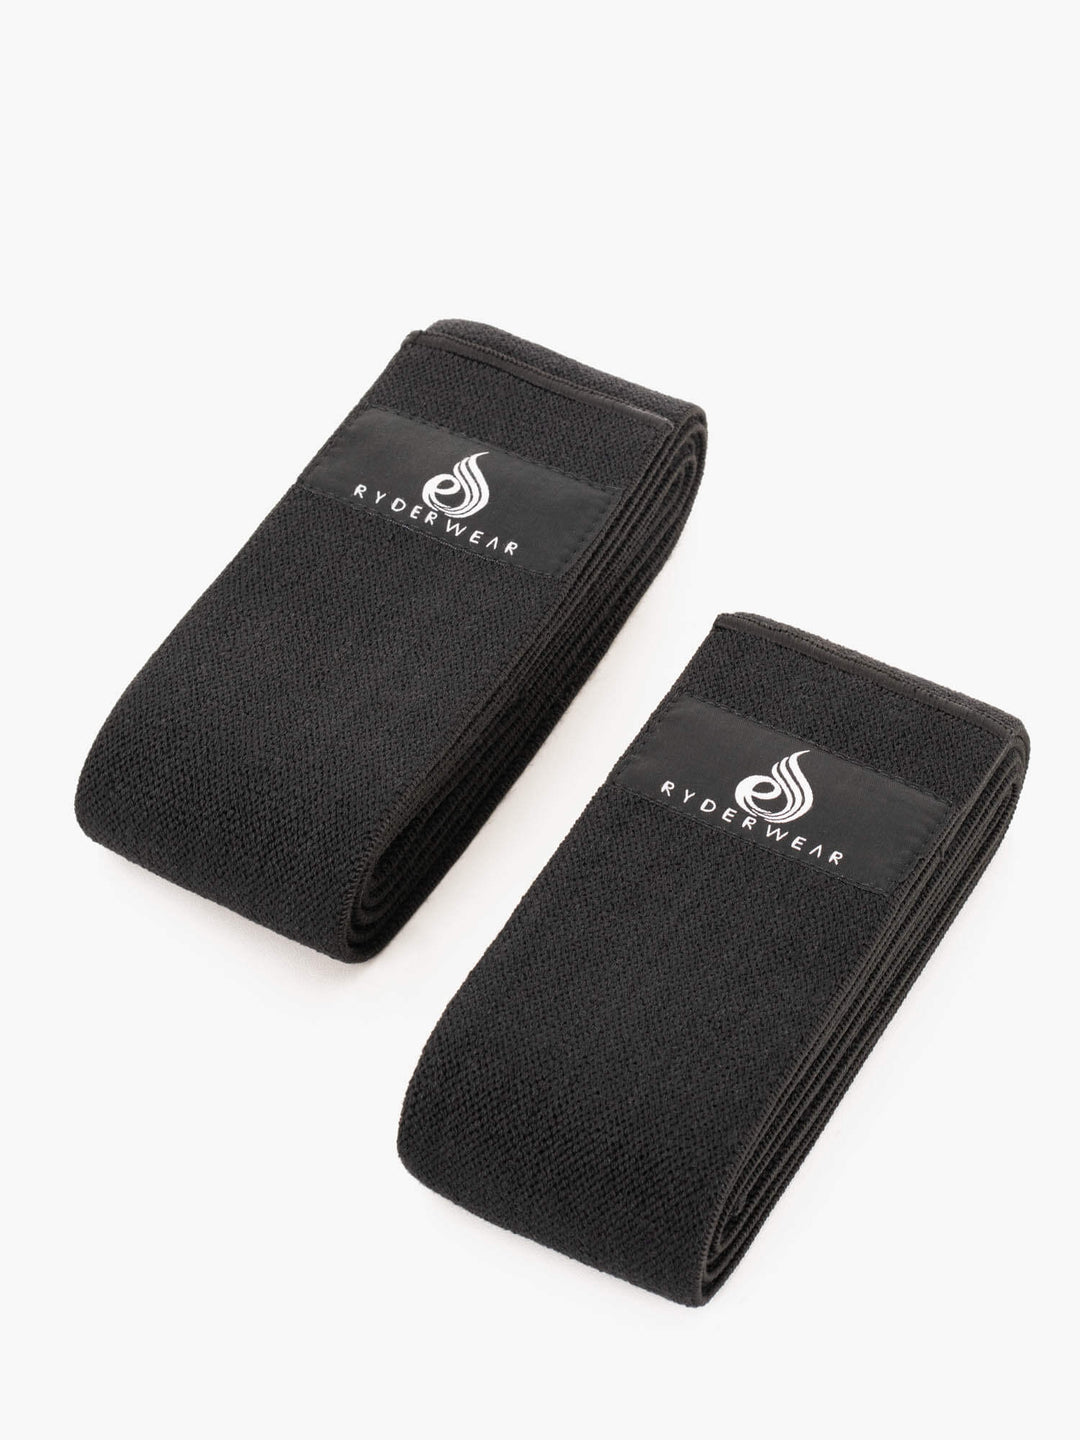 Knee Wraps - Black Accessories Ryderwear 